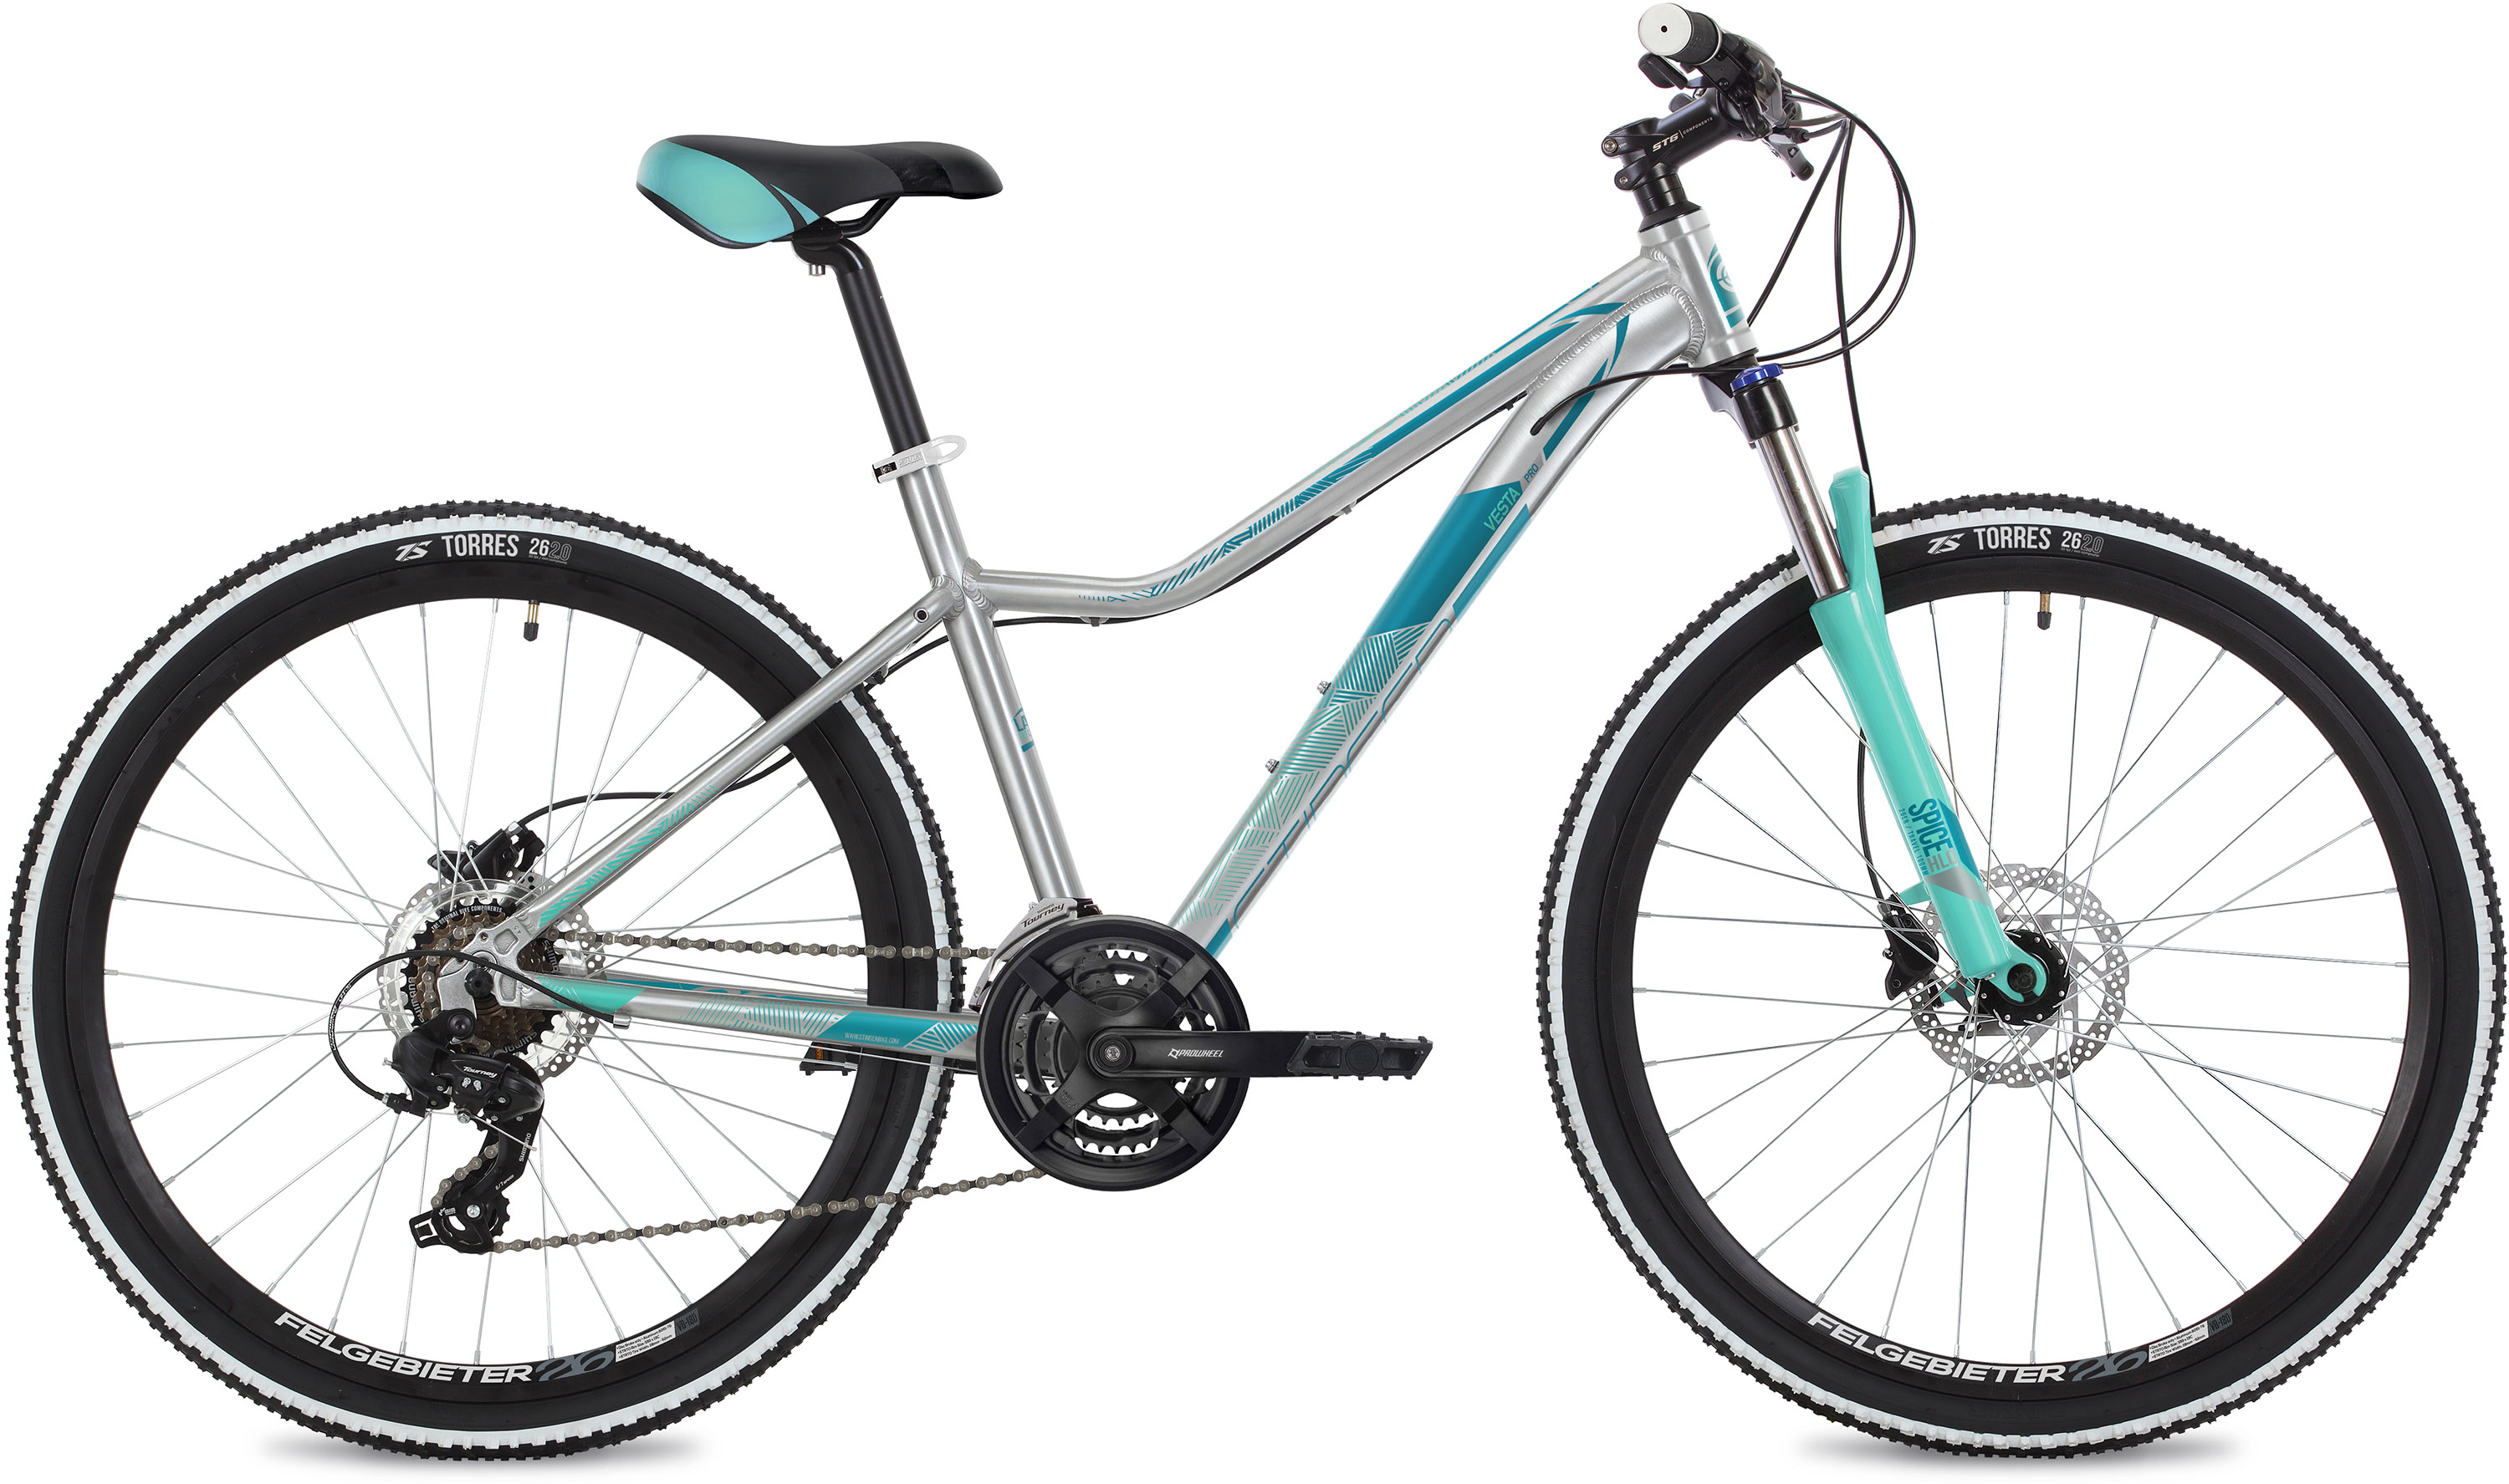  Отзывы о Женском велосипеде Stinger Vesta Pro 26 2020